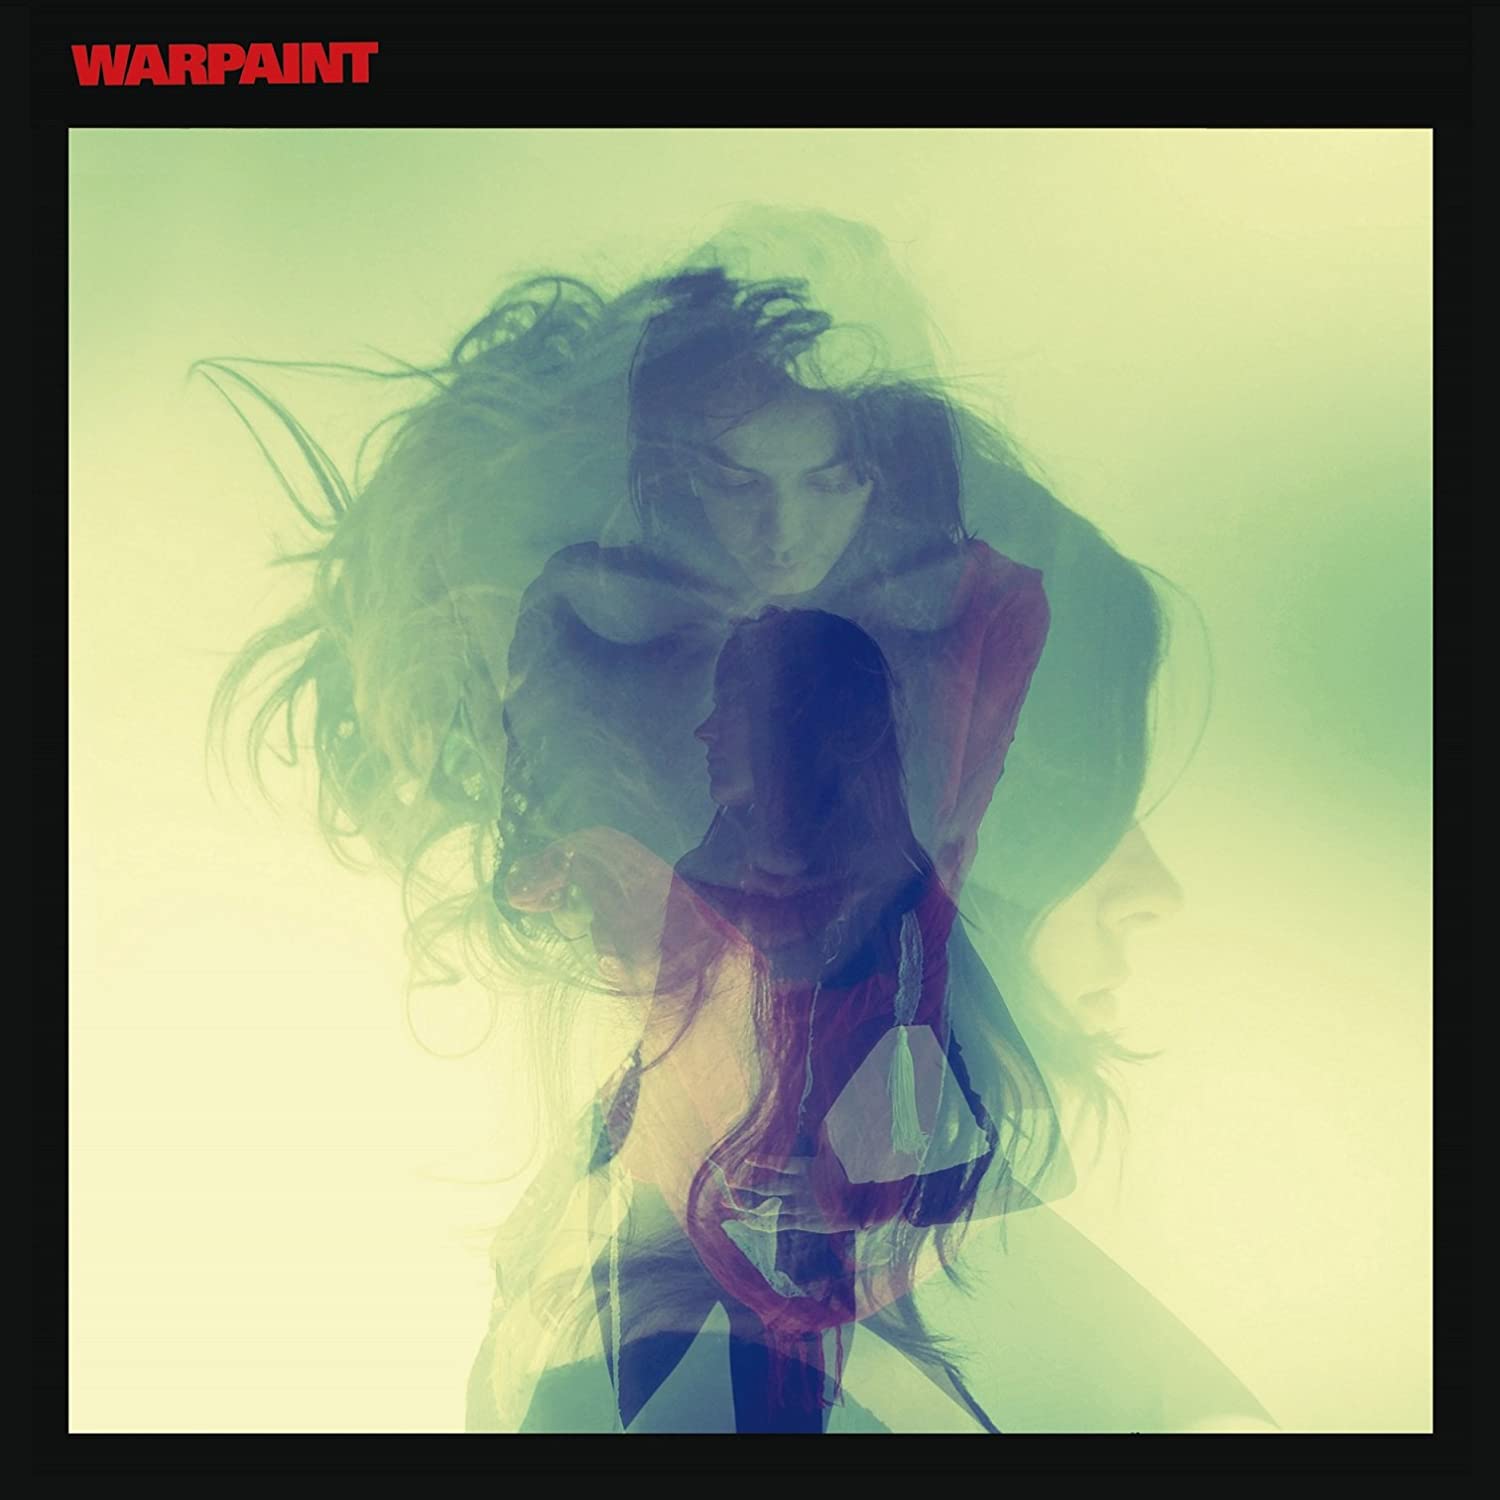 WARPAINT - WARPAINT Vinyl 2xLP